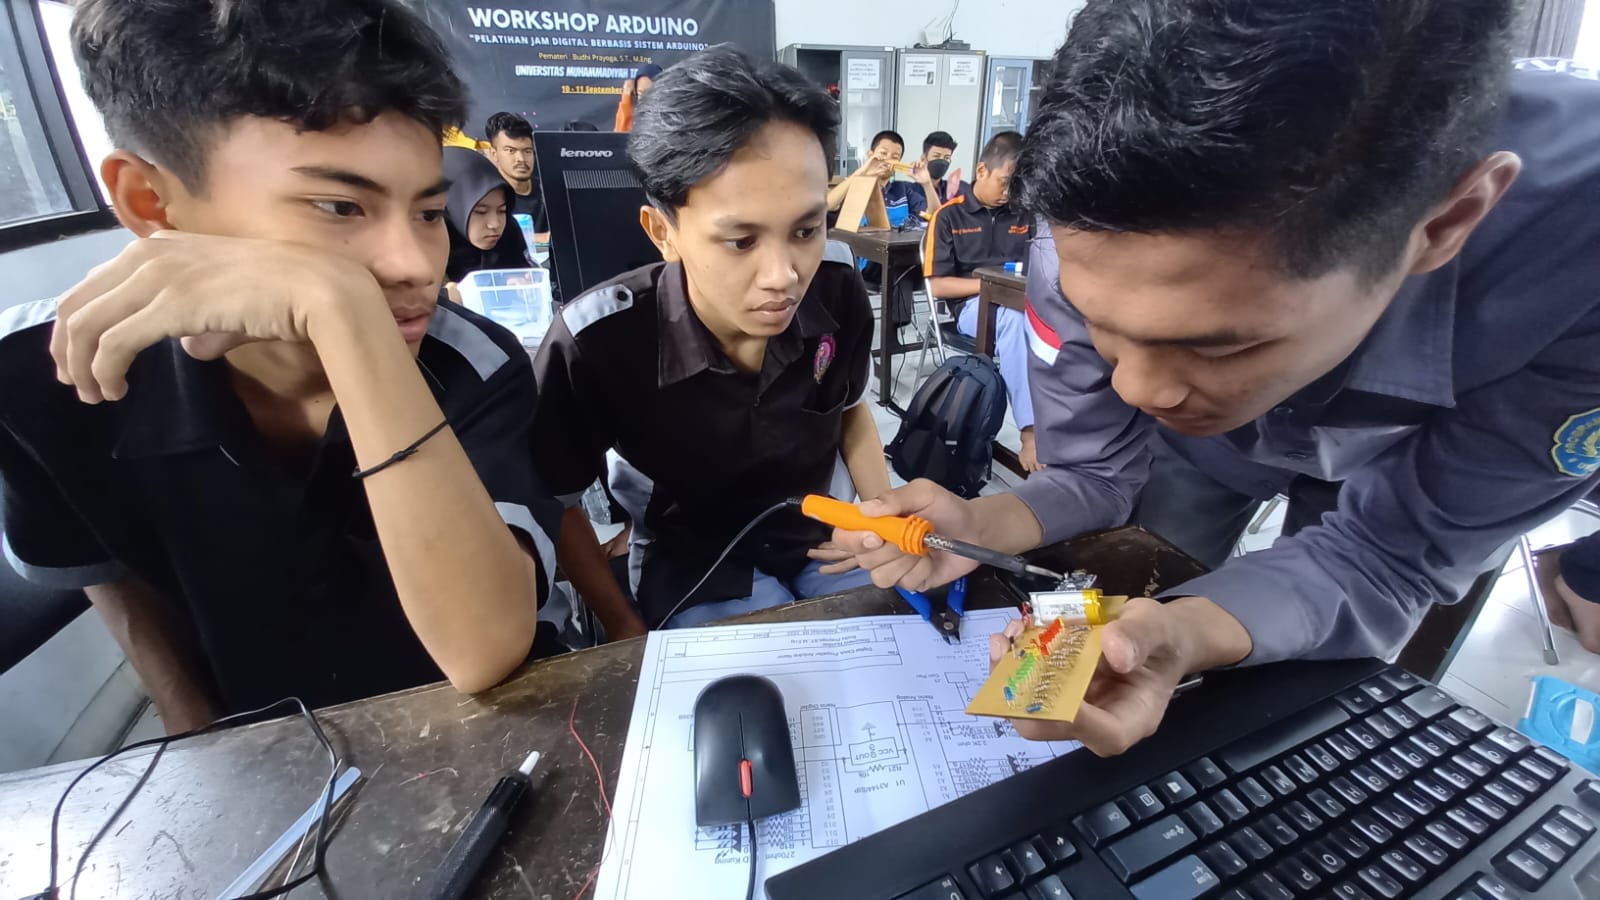 Umtas Berbagi Nutrisi Ilmu kepada Puluhan Pelajar Lewat Pelatihan Jam Digital Berbasis Sistem Arduino